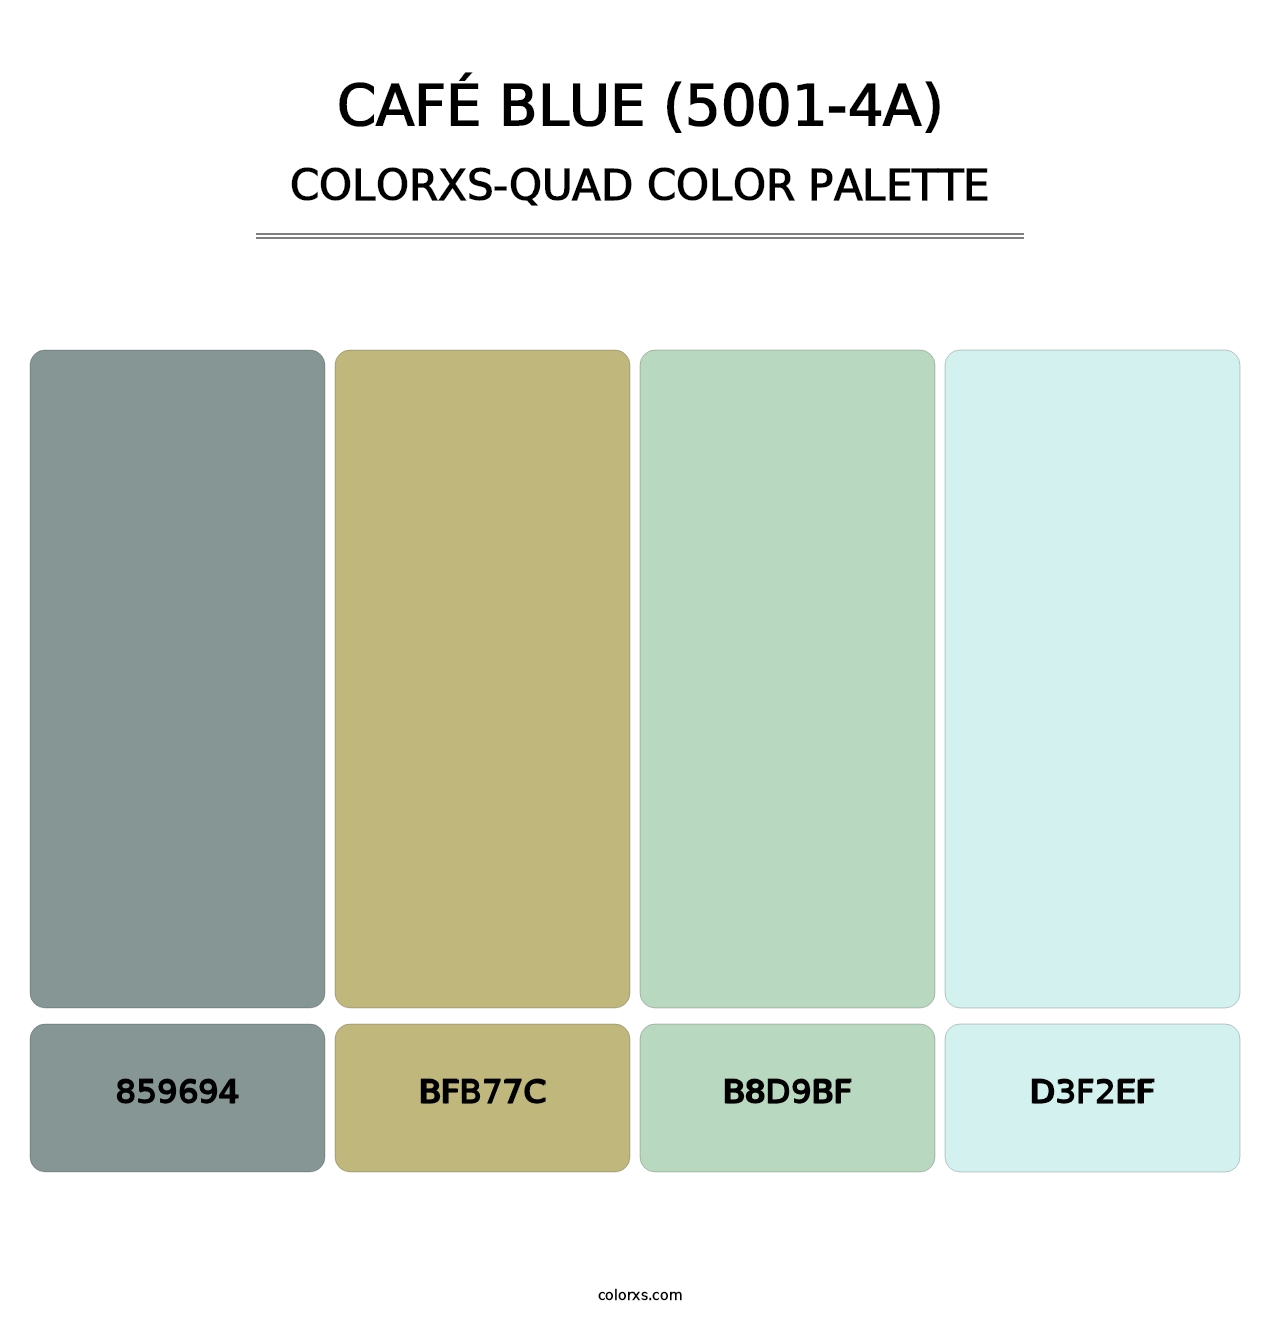 Café Blue (5001-4A) - Colorxs Quad Palette